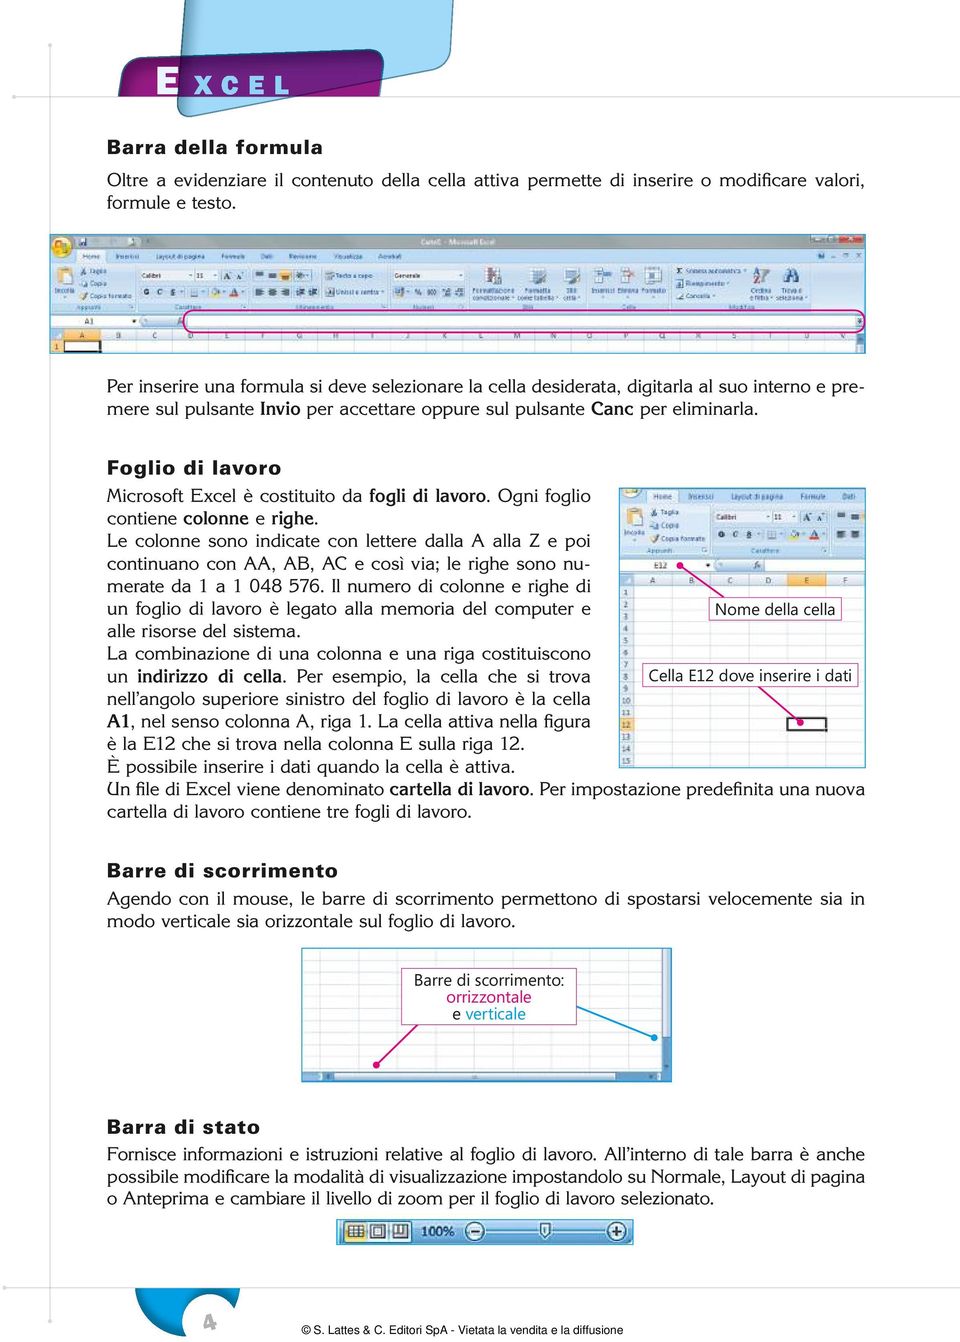 Foglio di lavoro Microsoft Excel è costituito da fogli di lavoro. Ogni foglio contiene colonne e righe.